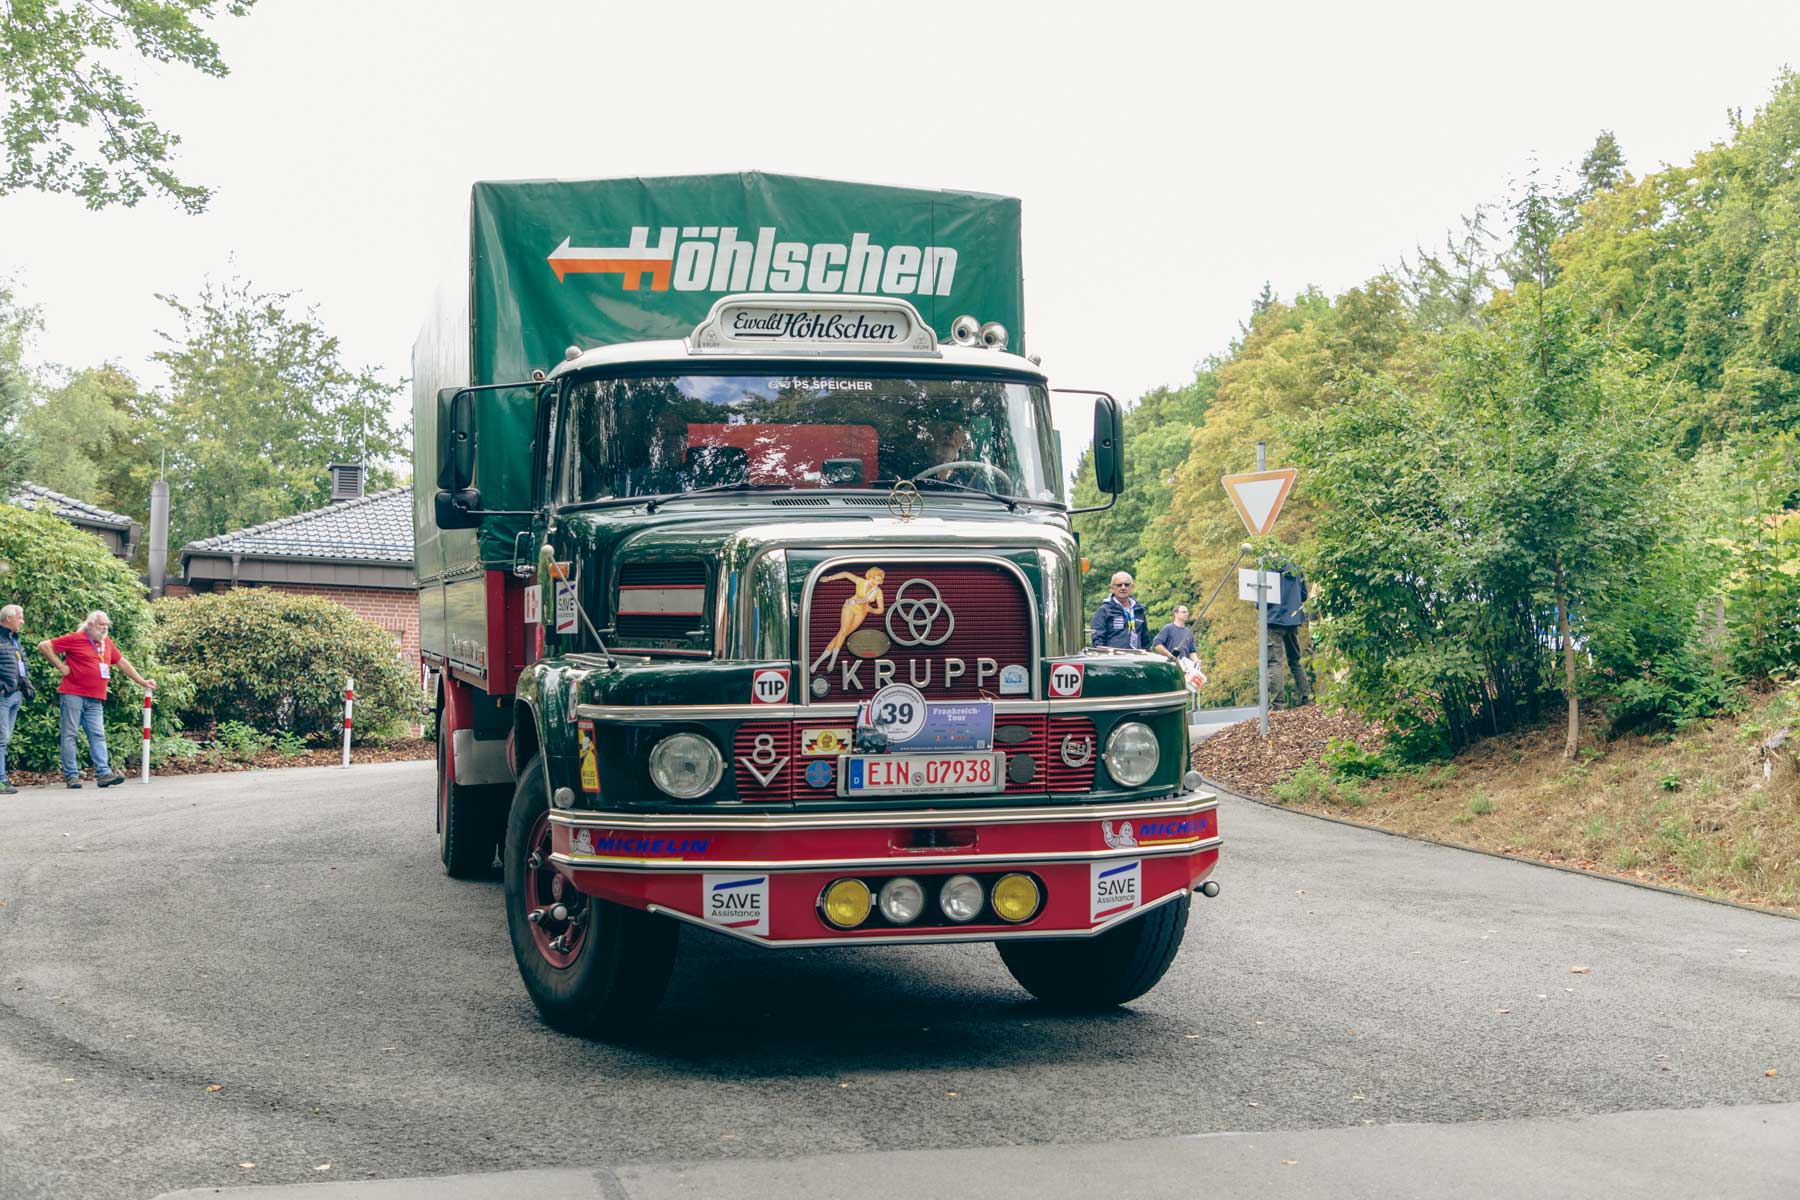 Historic trucks on tour